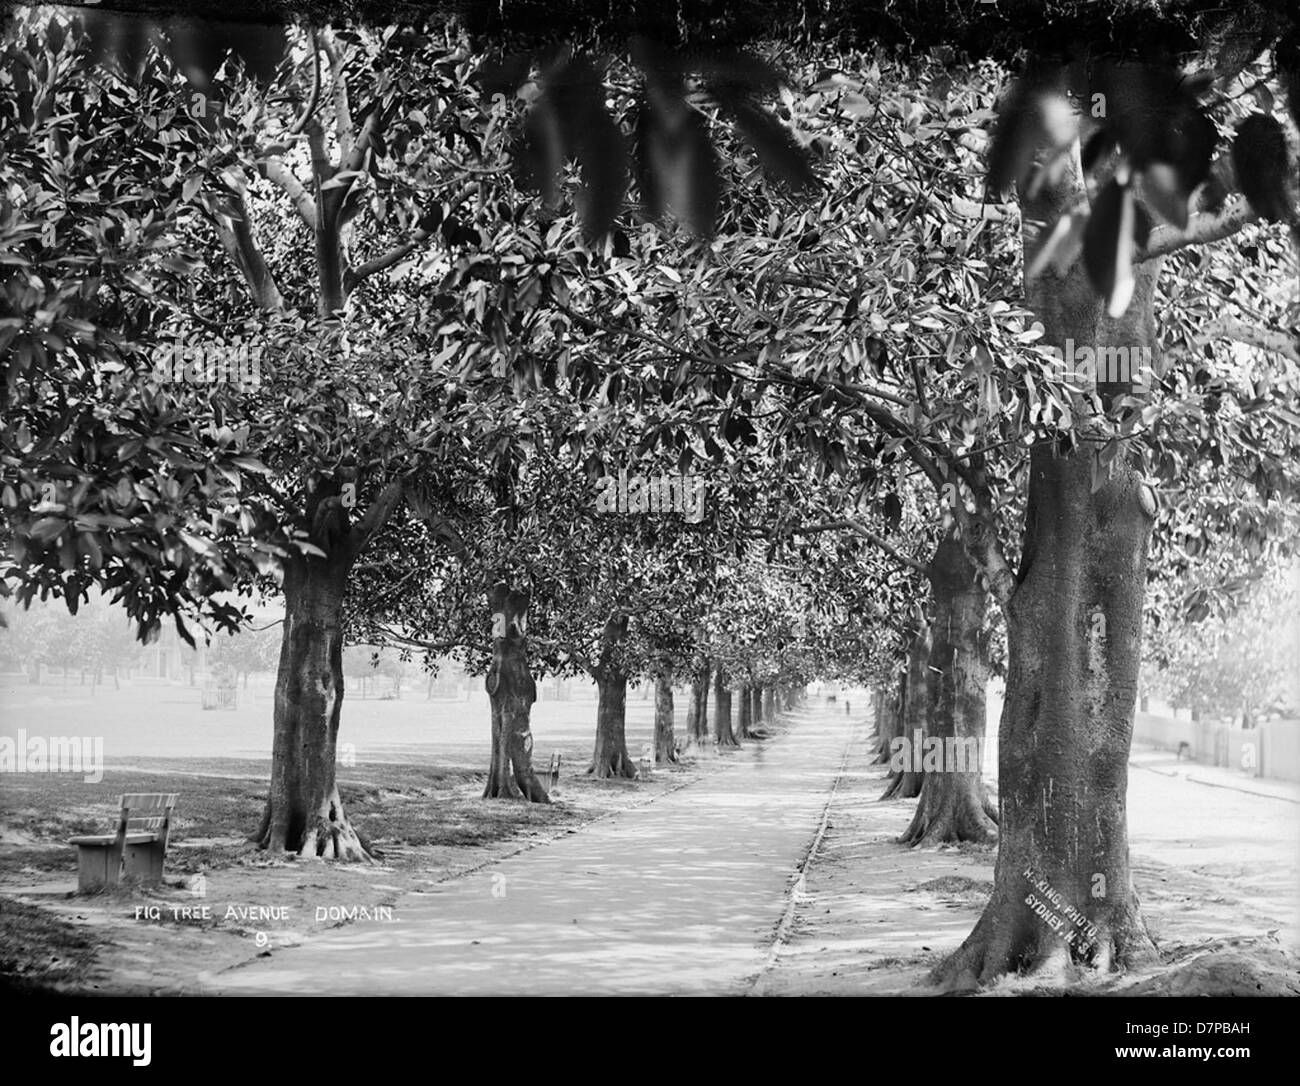 Fig Tree Avenue, dominio Foto Stock